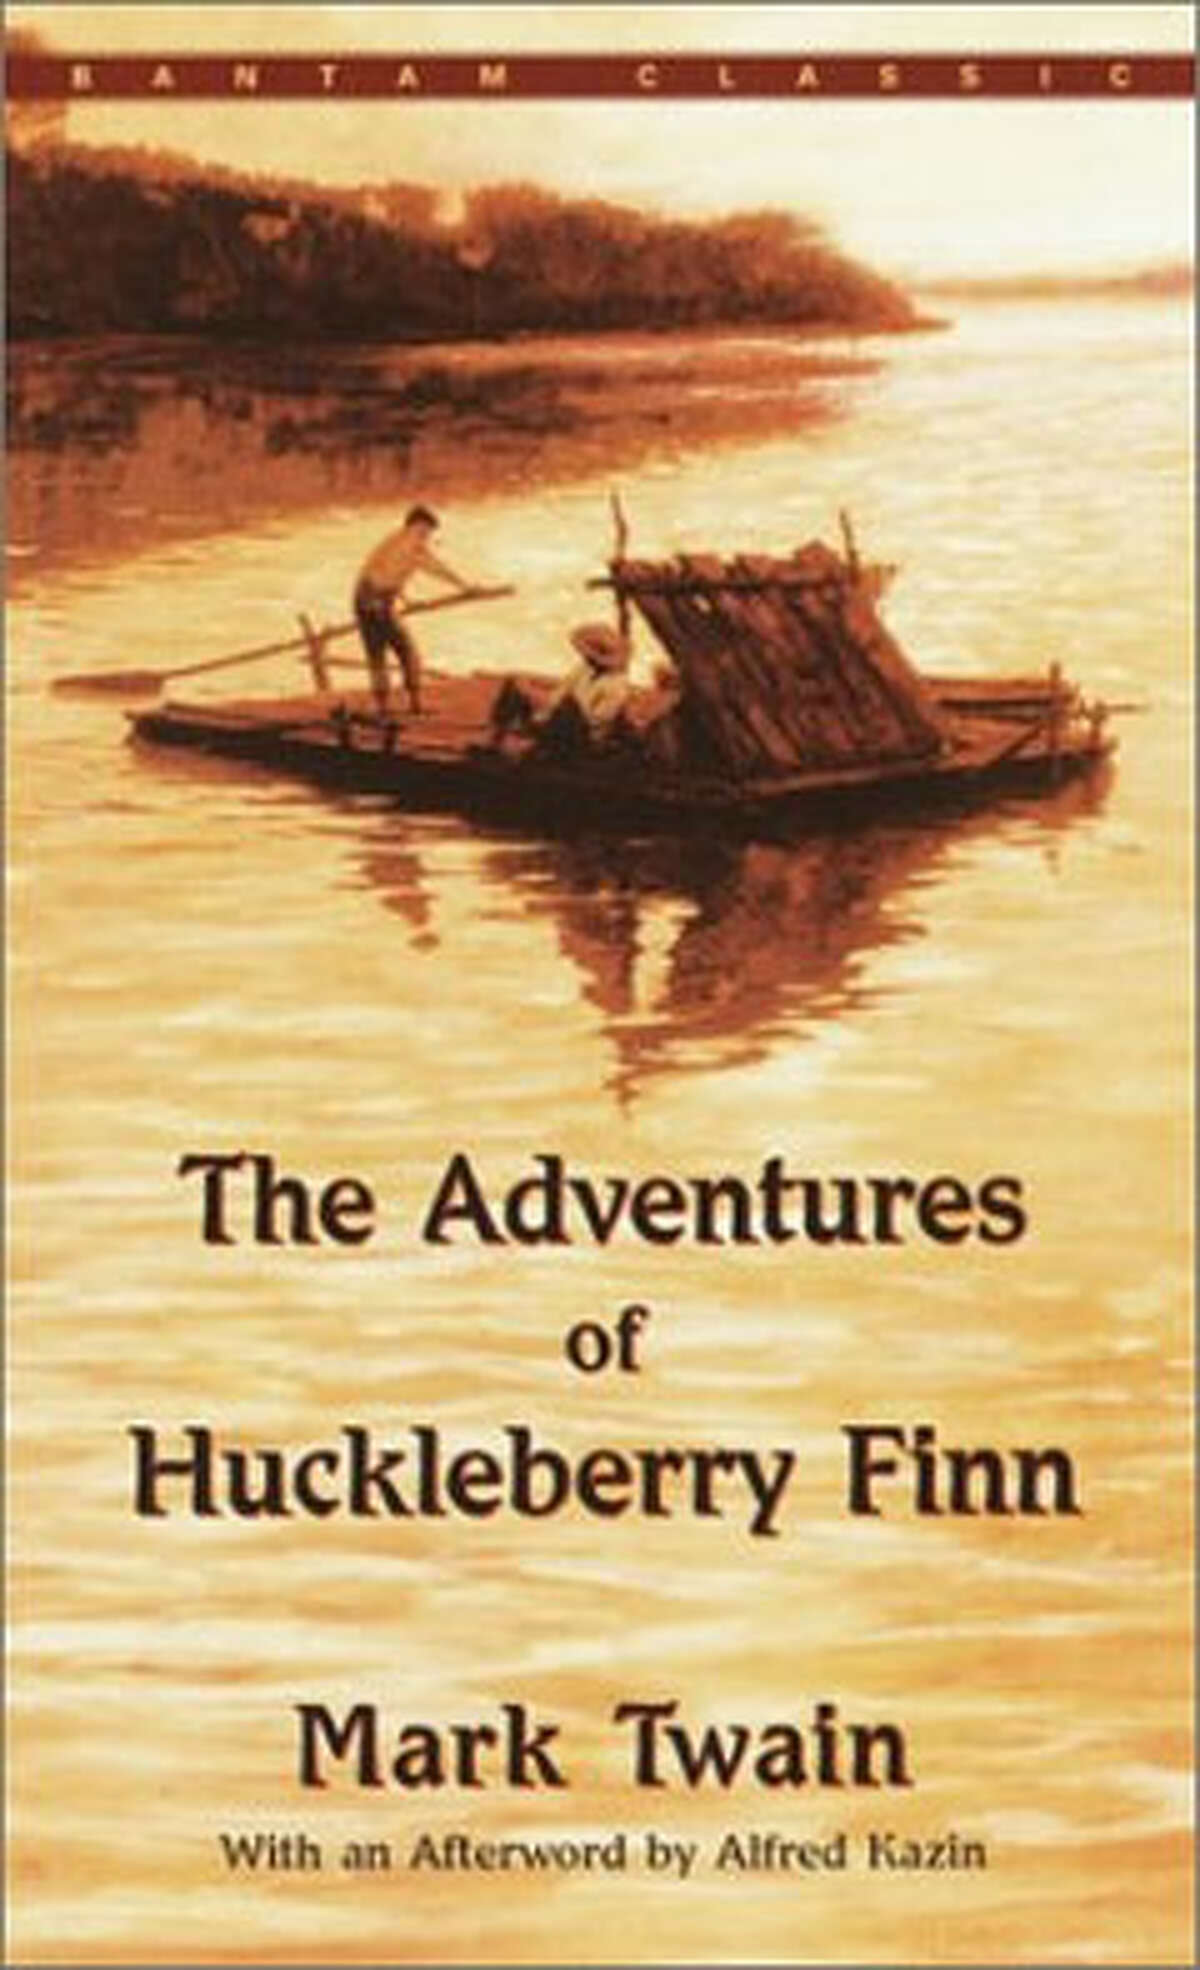 The adventures of huckleberry finn mark twain. Adventures of Huckleberry Finn. Mark Twain the Adventures of Huckleberry Finn. Гекльберри Финна на английском.